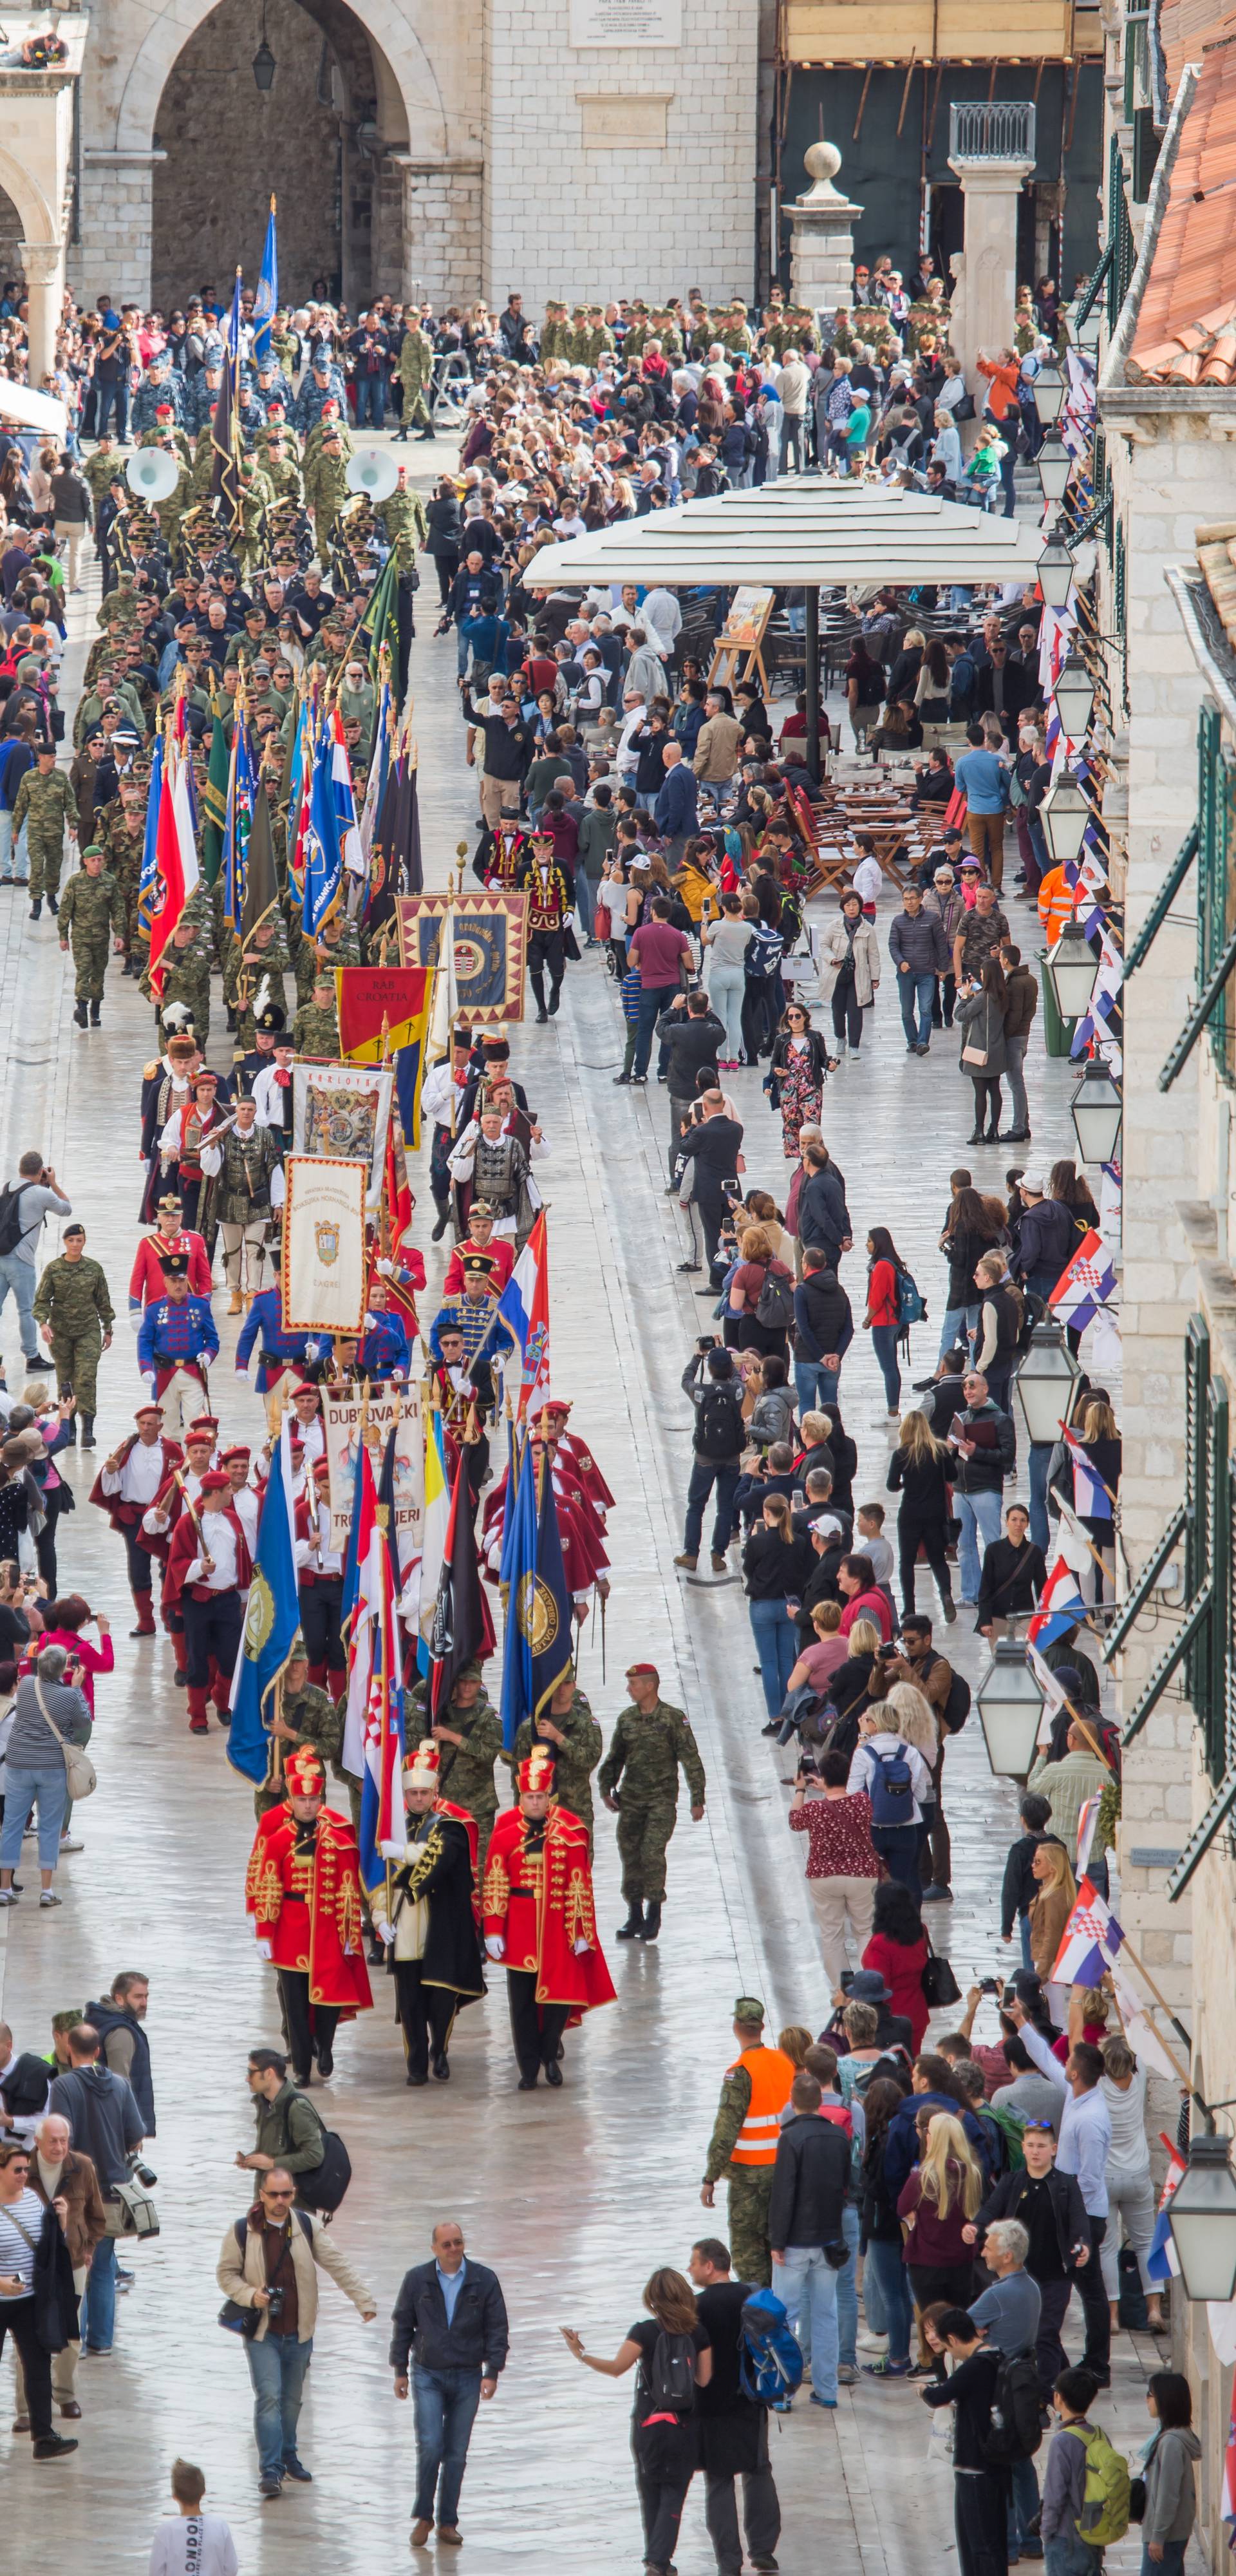 Velika fešta: Dubrovčani slave dan kad su slomili jugo-armiju